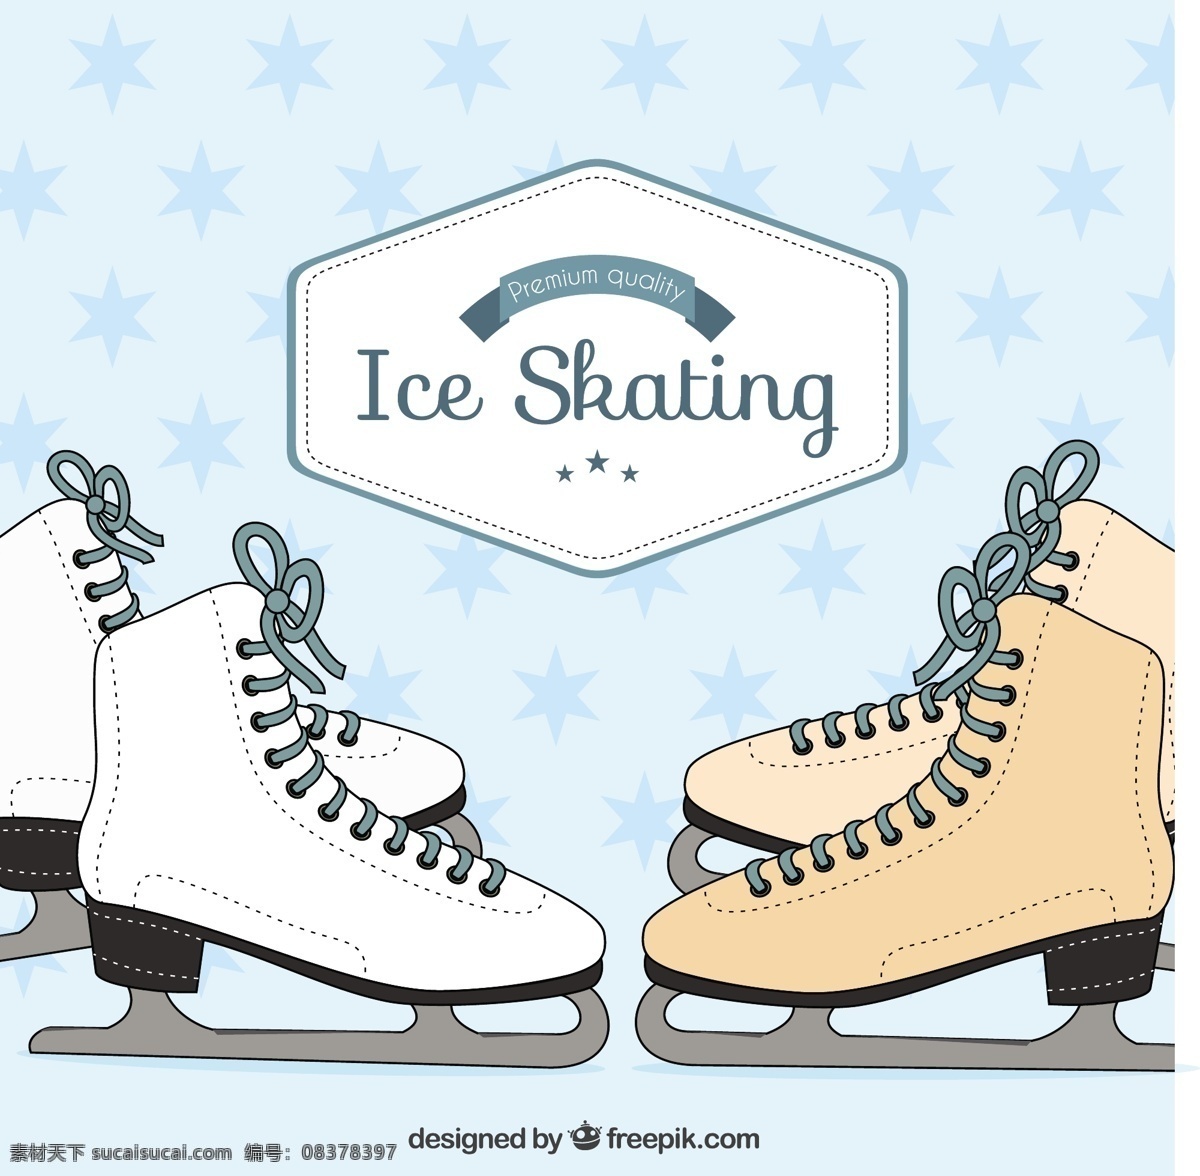 冰包 图标 运动 雪 冬 平 冰 平面设计 运动鞋 鞋 影 插图 白色 平面图标 滑冰 年轻 靴子 图 包